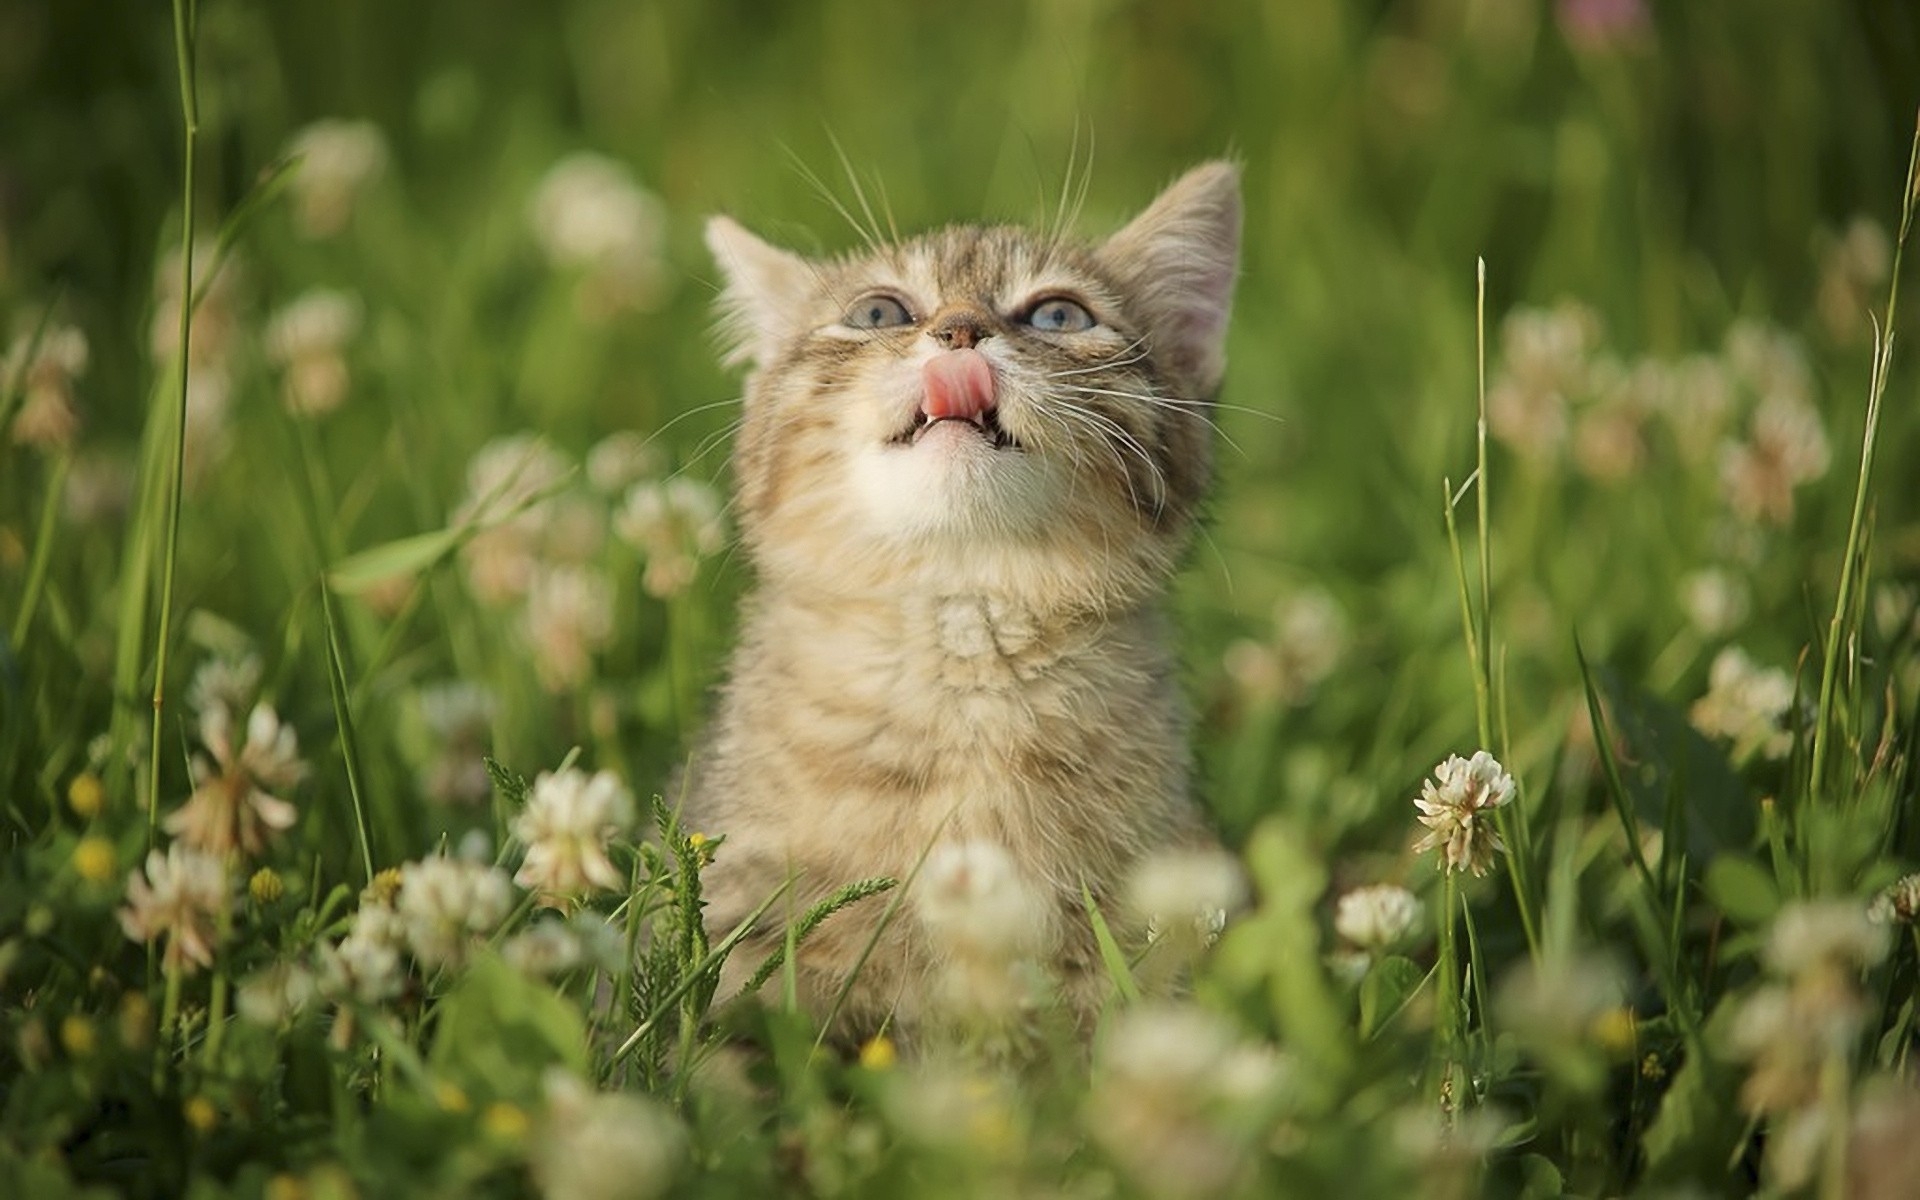 A kitten in the grass